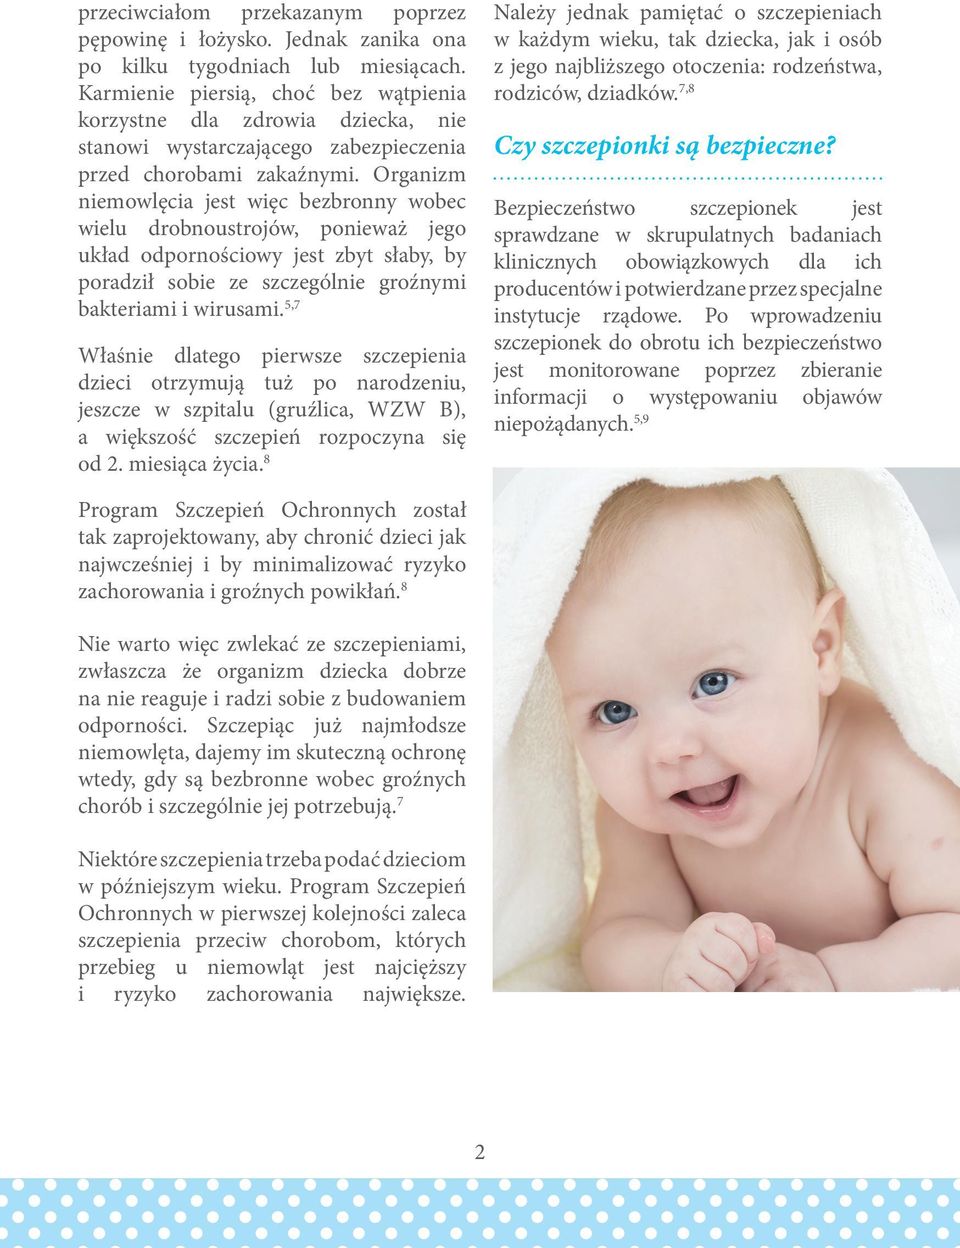 Organizm niemowlęcia jest więc bezbronny wobec wielu drobnoustrojów, ponieważ jego układ odpornościowy jest zbyt słaby, by poradził sobie ze szczególnie groźnymi bakteriami i wirusami.